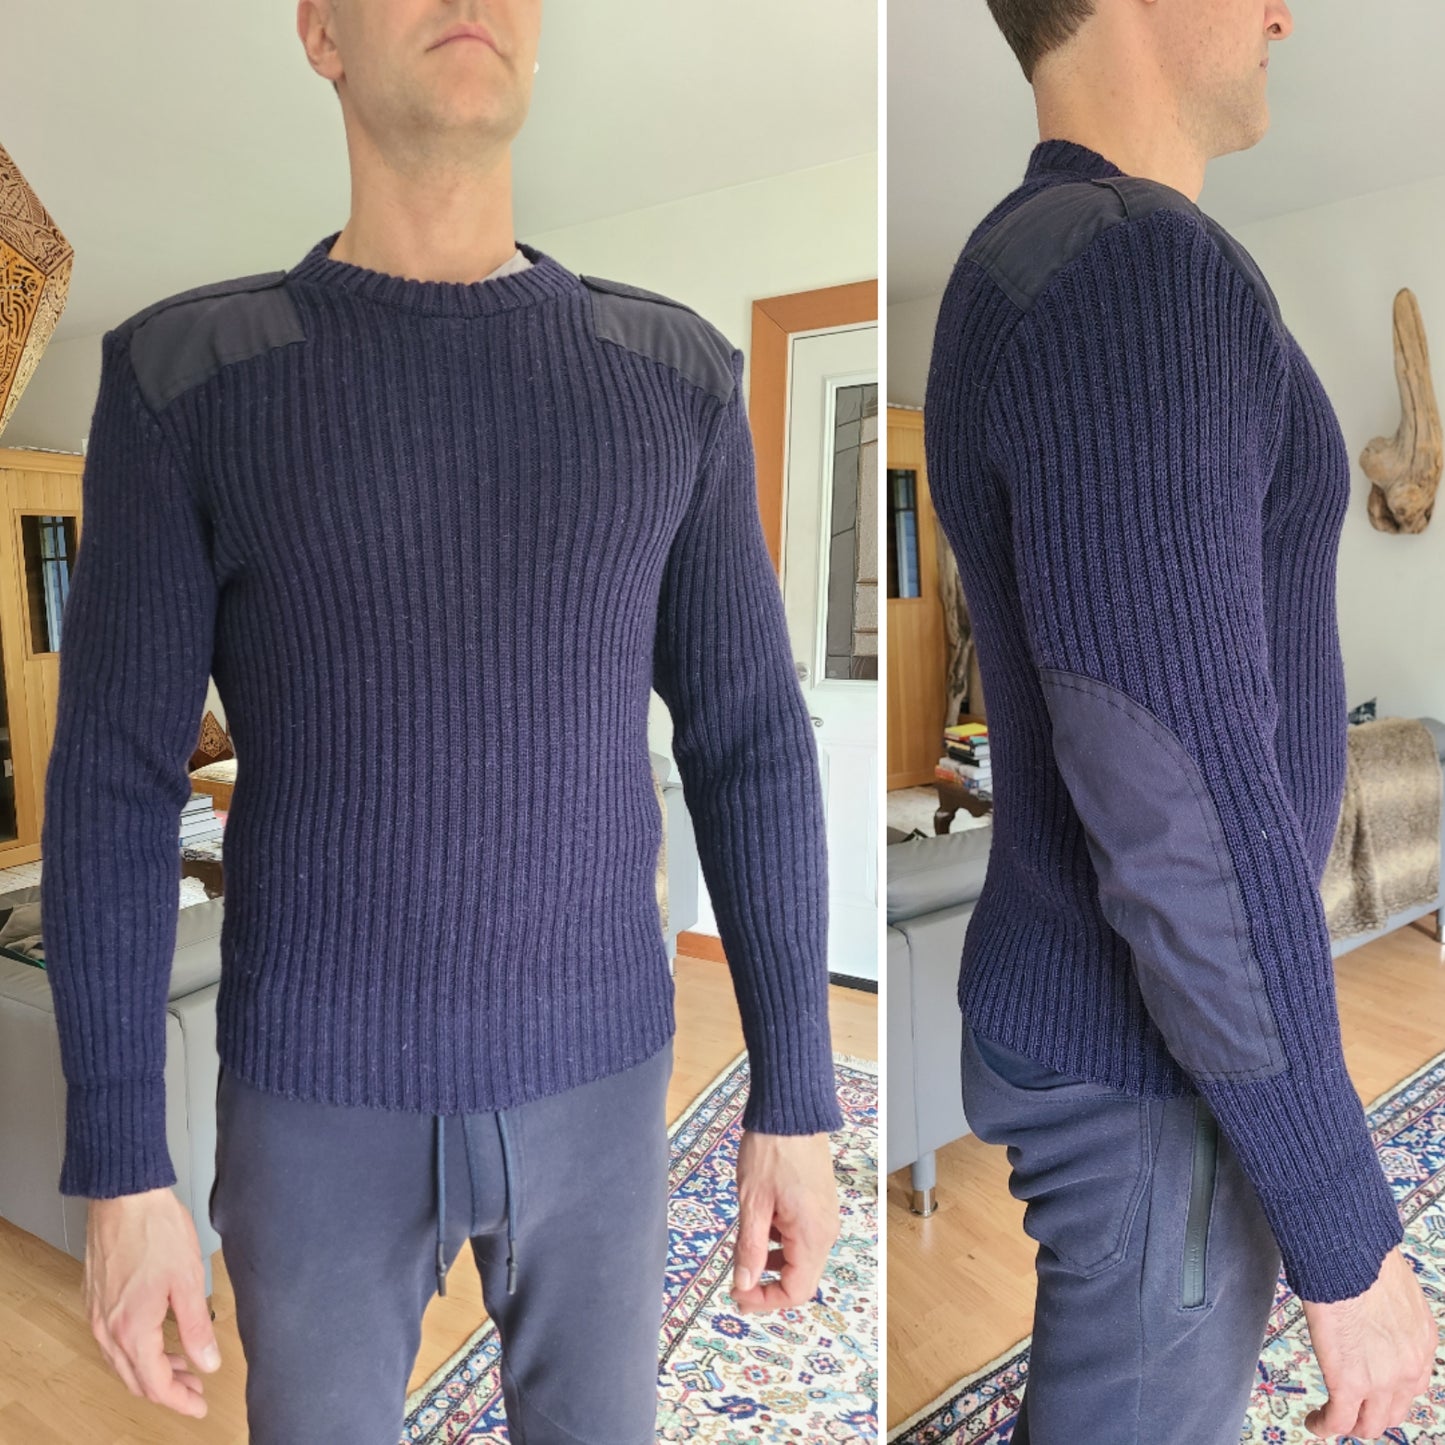 The British Navy Wool Sweater